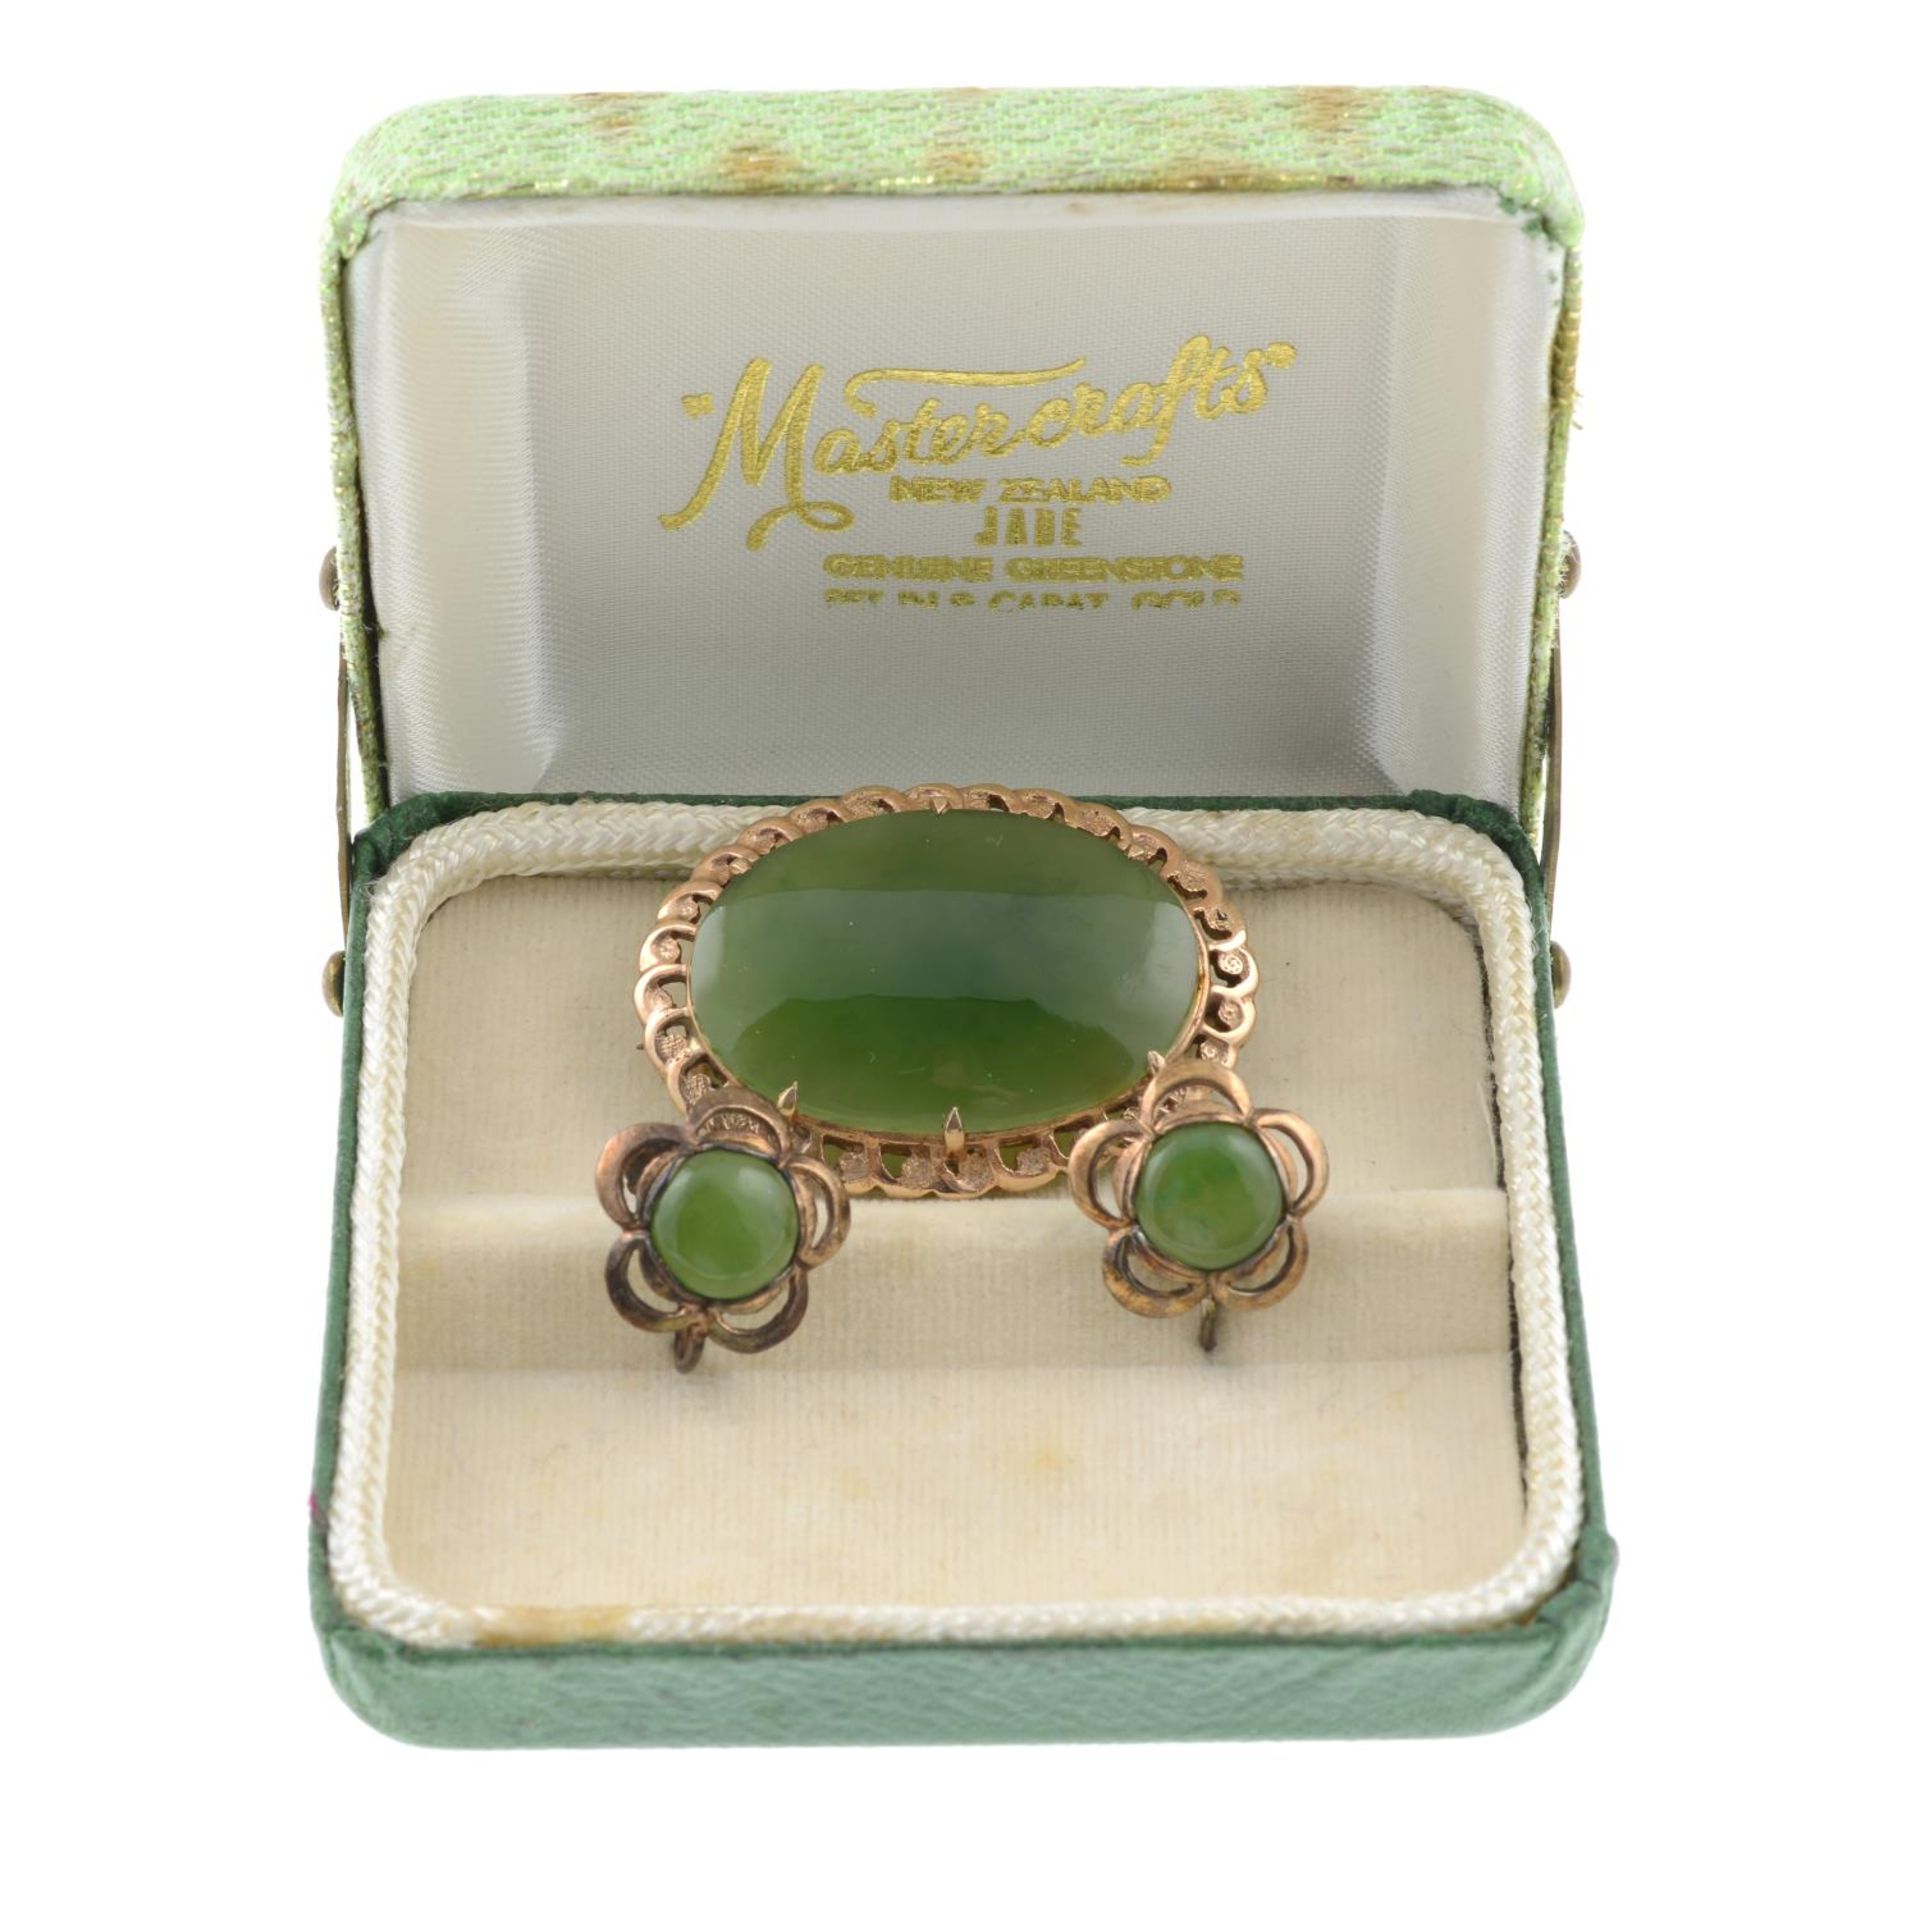 A jade brooch and a pair of jade earrings. - Image 4 of 5